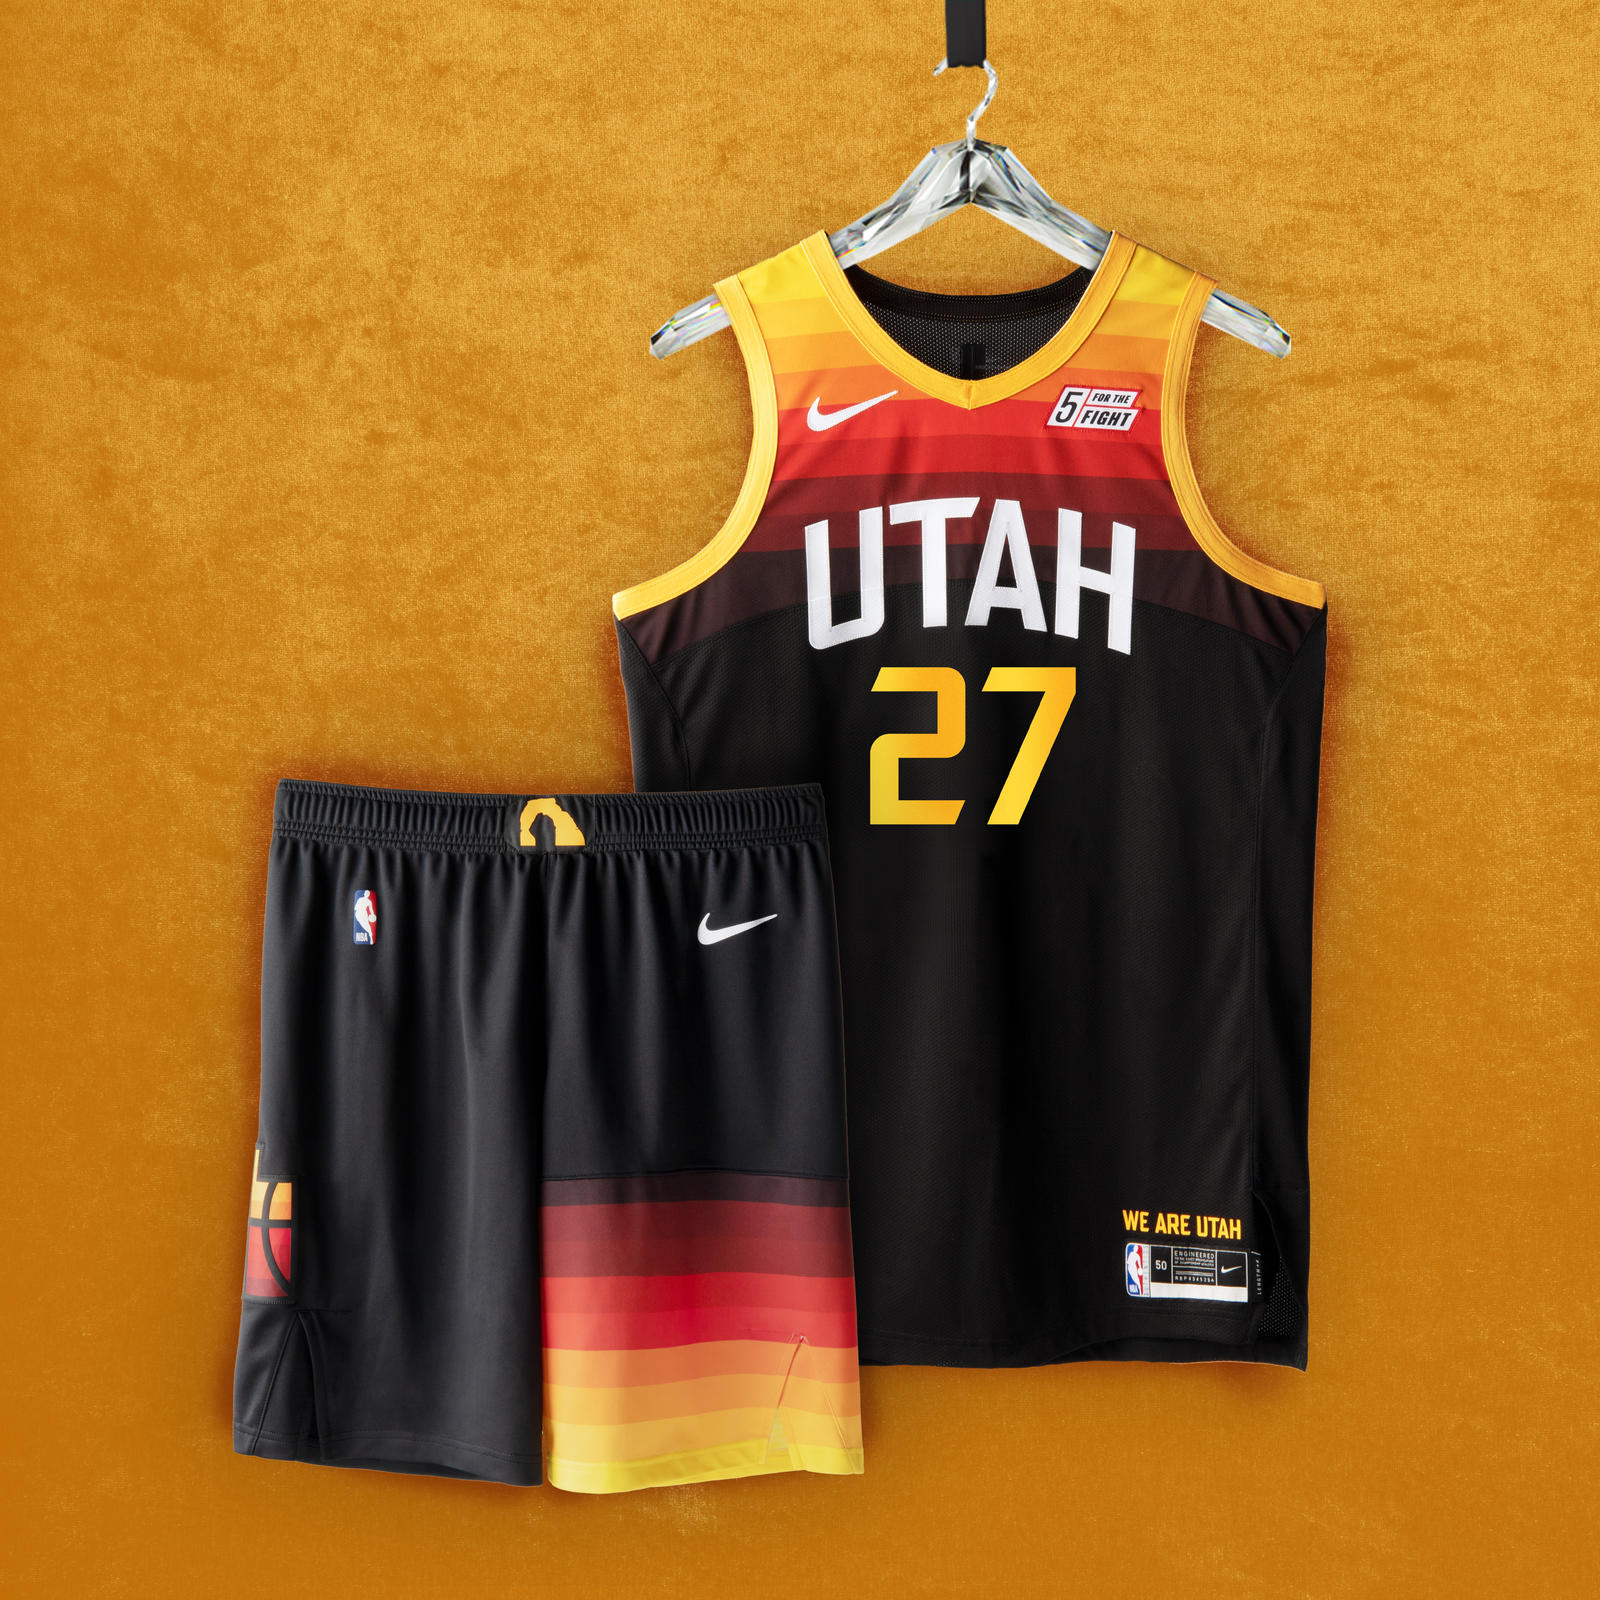 Cancha NBA on Twitter: "UTAH JAZZ Los Jazz siguen apostando por el degradado del rojo uniforme original de su "City Edition". La asimetría de las bandas de color en el